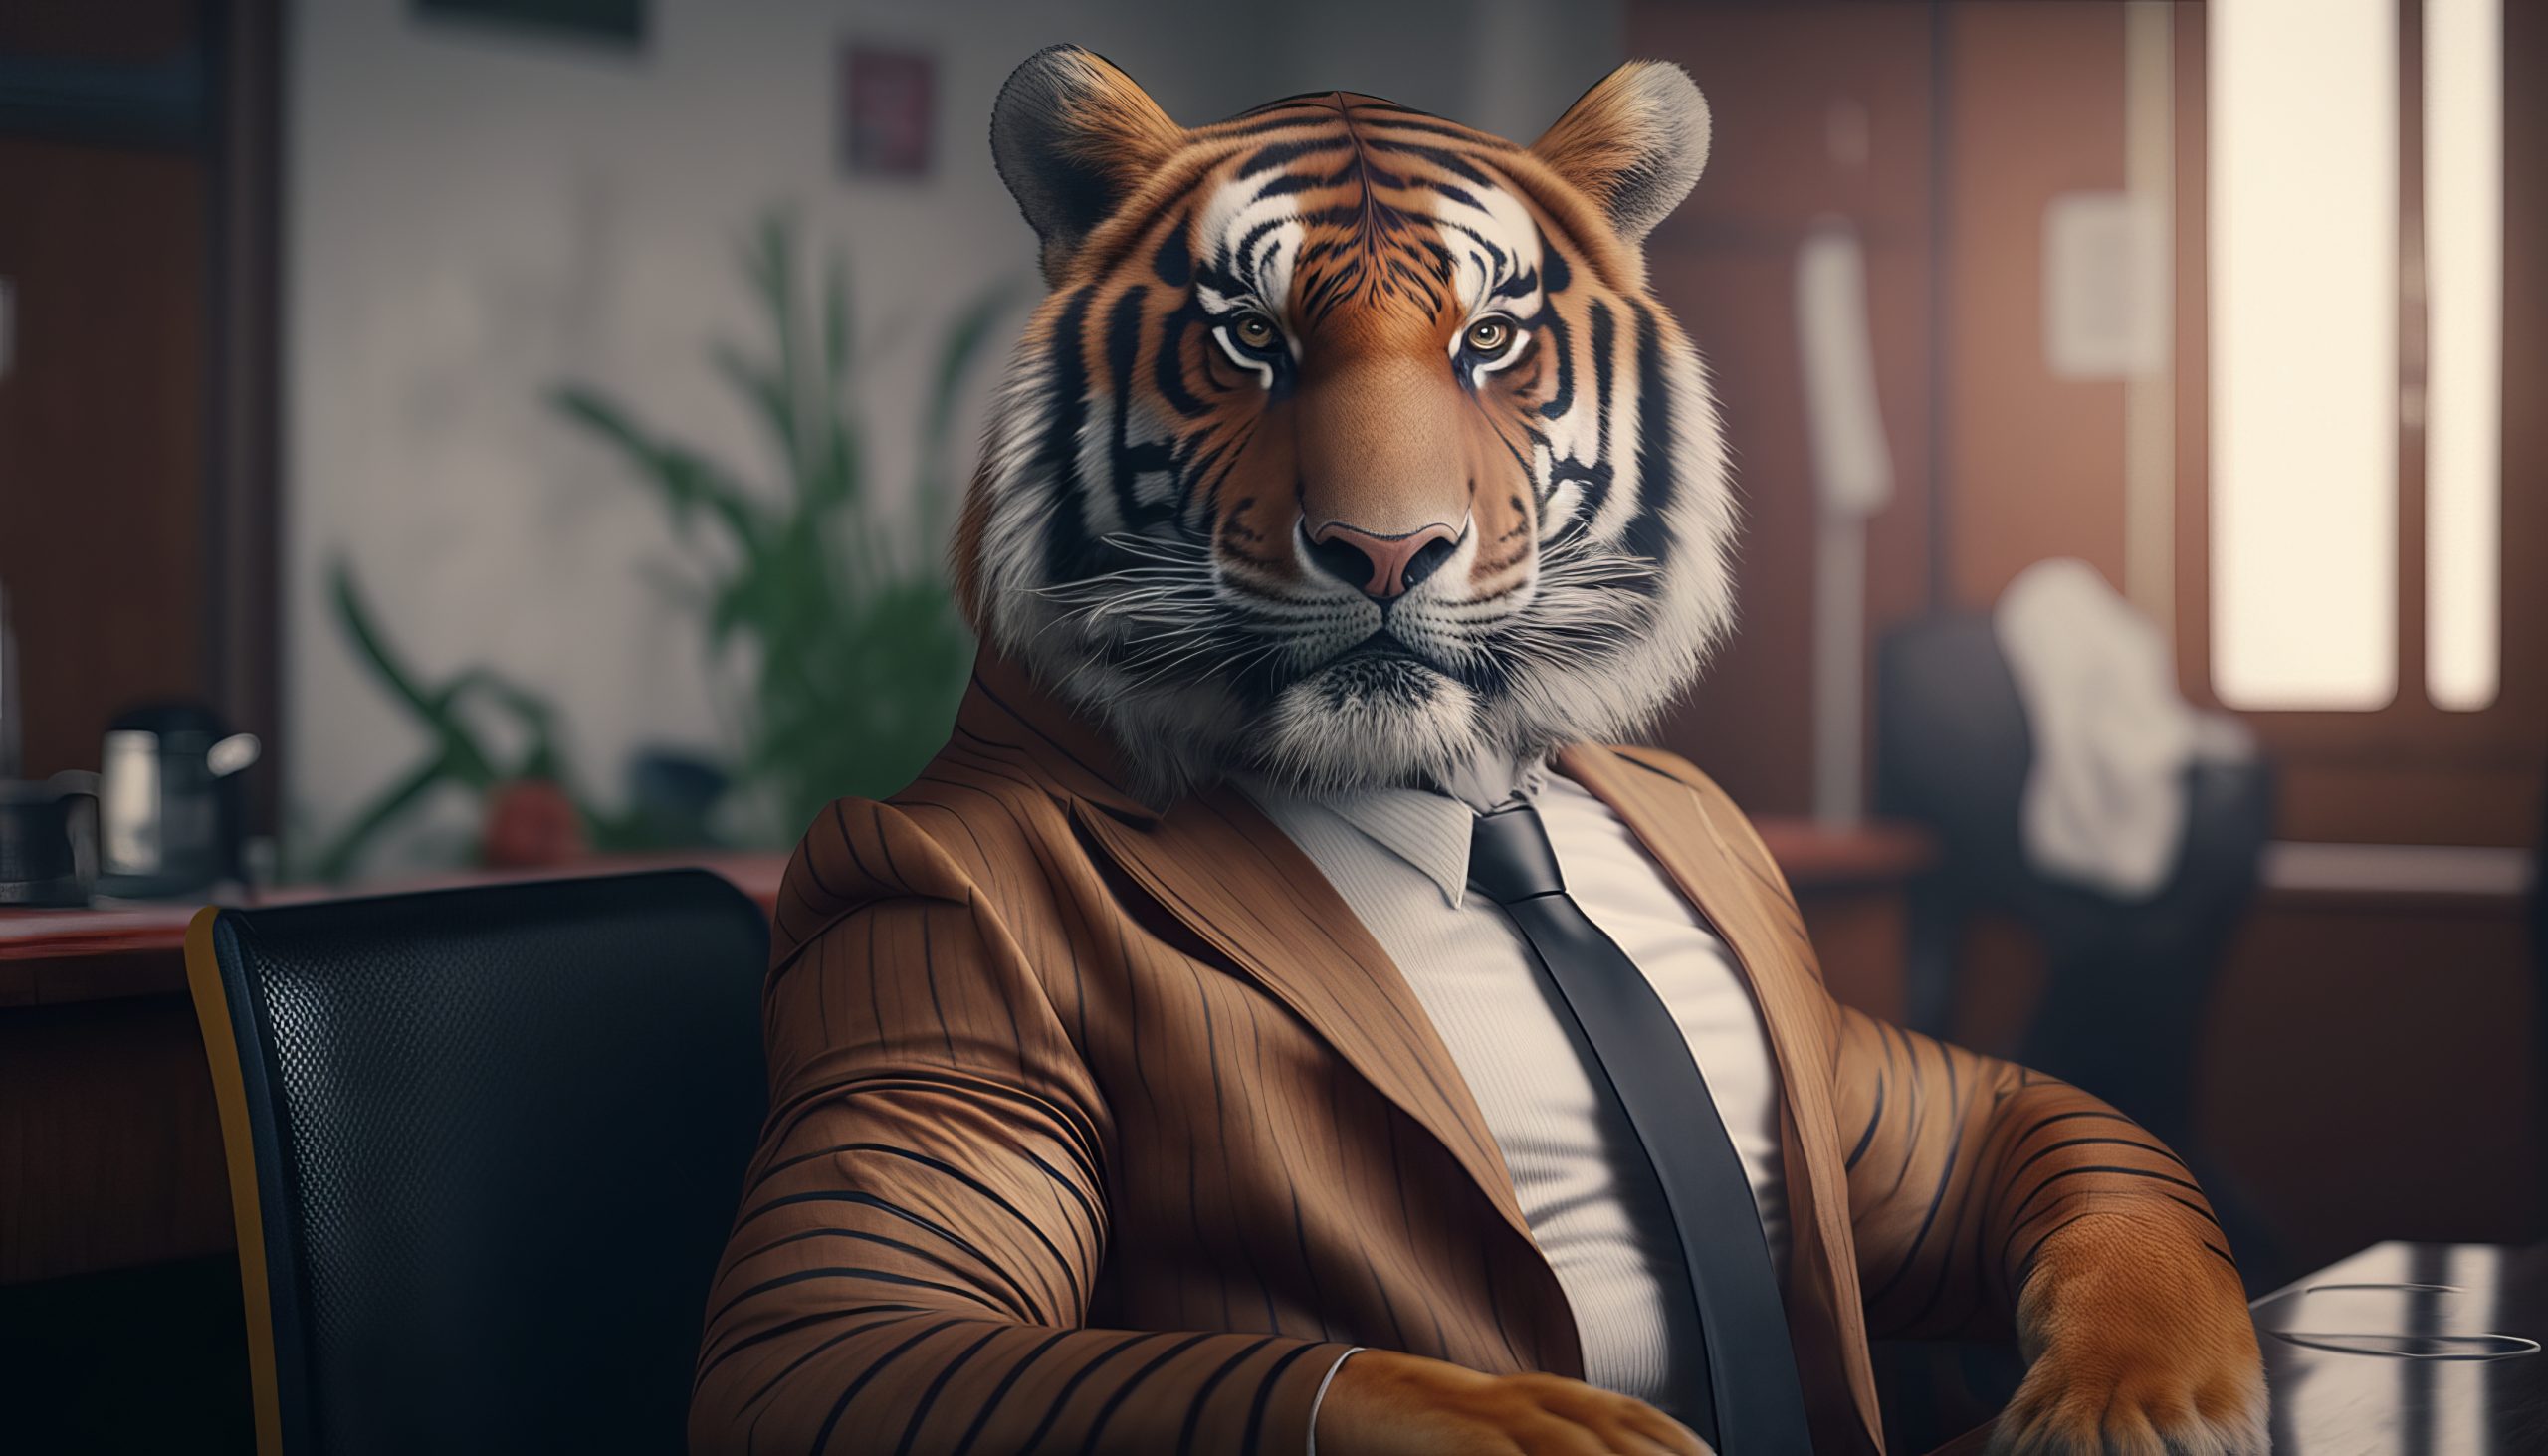 Porträt eines Tigers in einem Geschäftsanzug mit Krawatte.